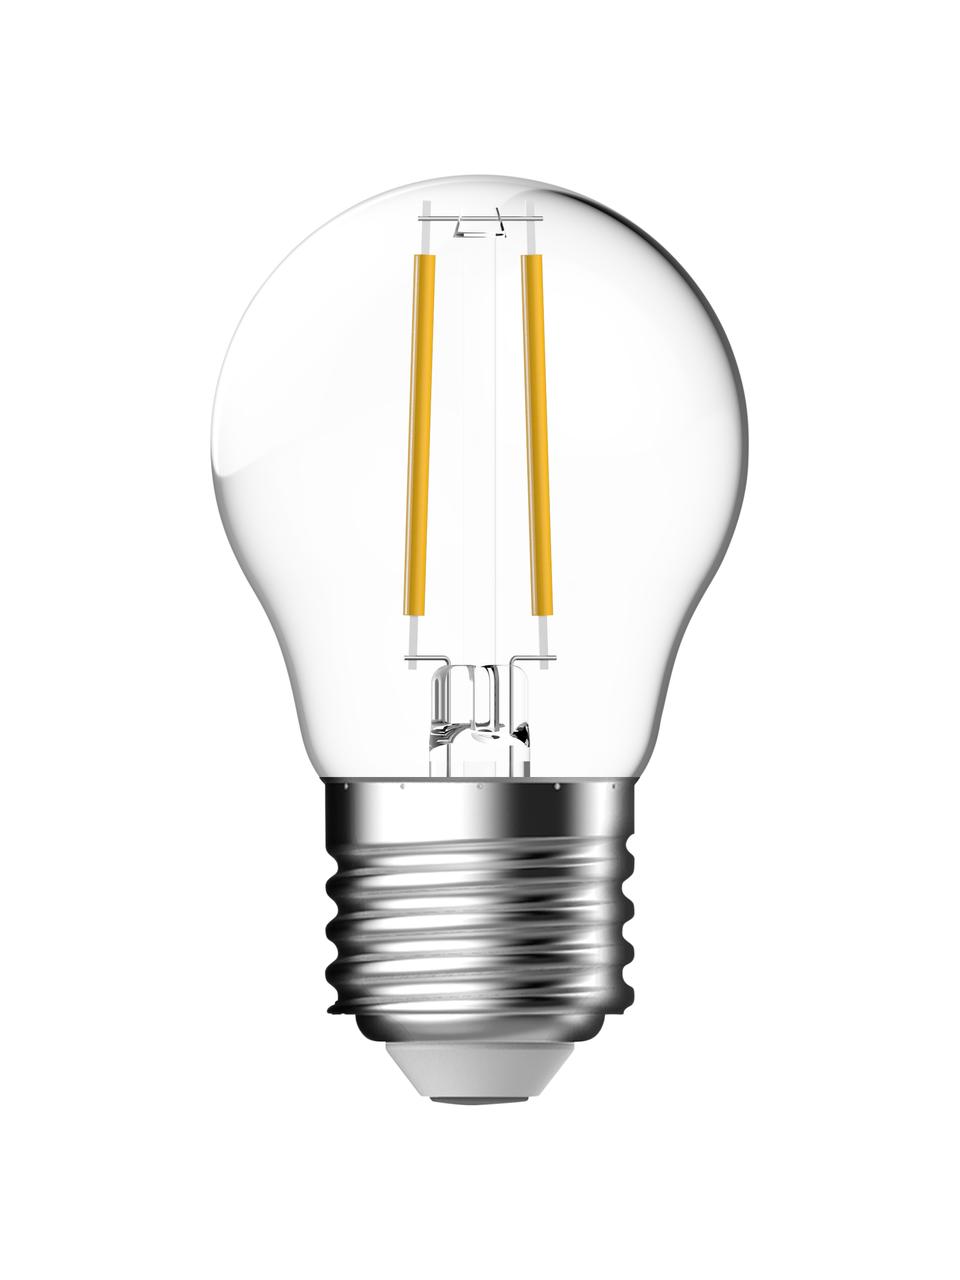 Malé žárovky E27, stmívatelná, teplá bílá, 2 ks, Transparentní, Ø 5 cm, V 8 cm, 2 ks